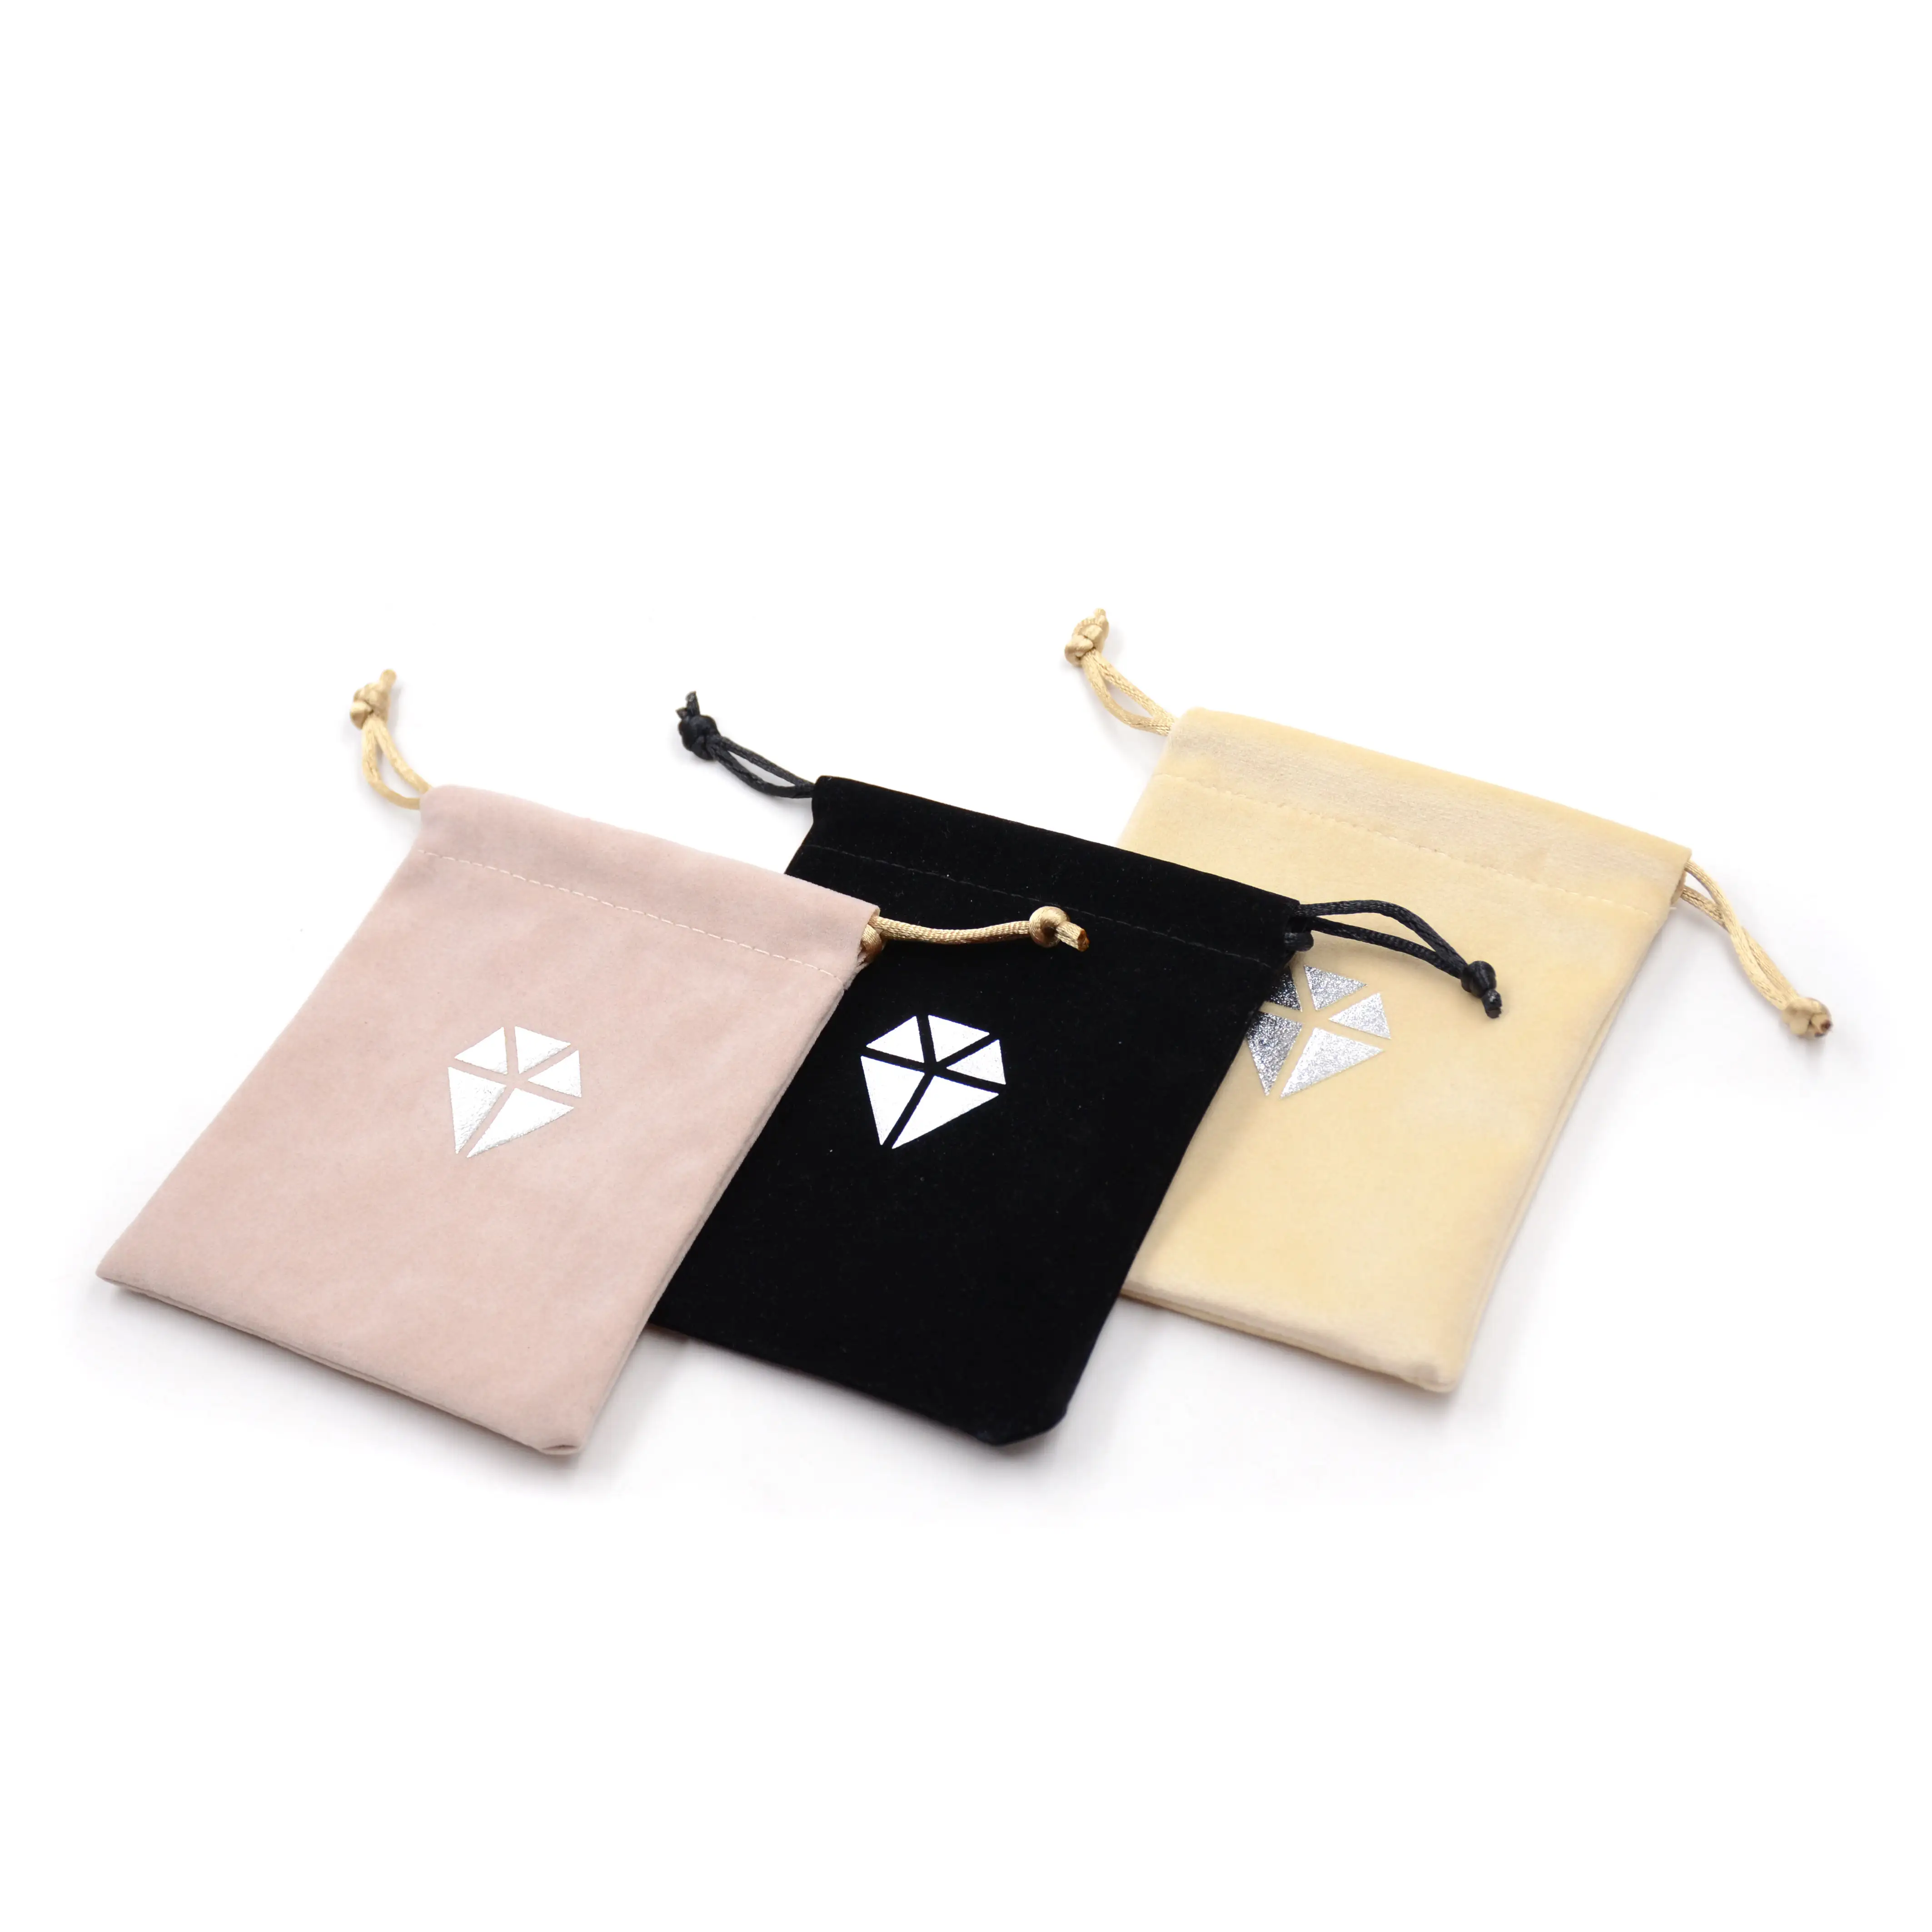 Bestpackaging logo personalizzato coulisse confezione di gioielli sacchetto di velluto gioiello sacchetto regalo orecchino collana braccialetto sacchetto di immagazzinaggio